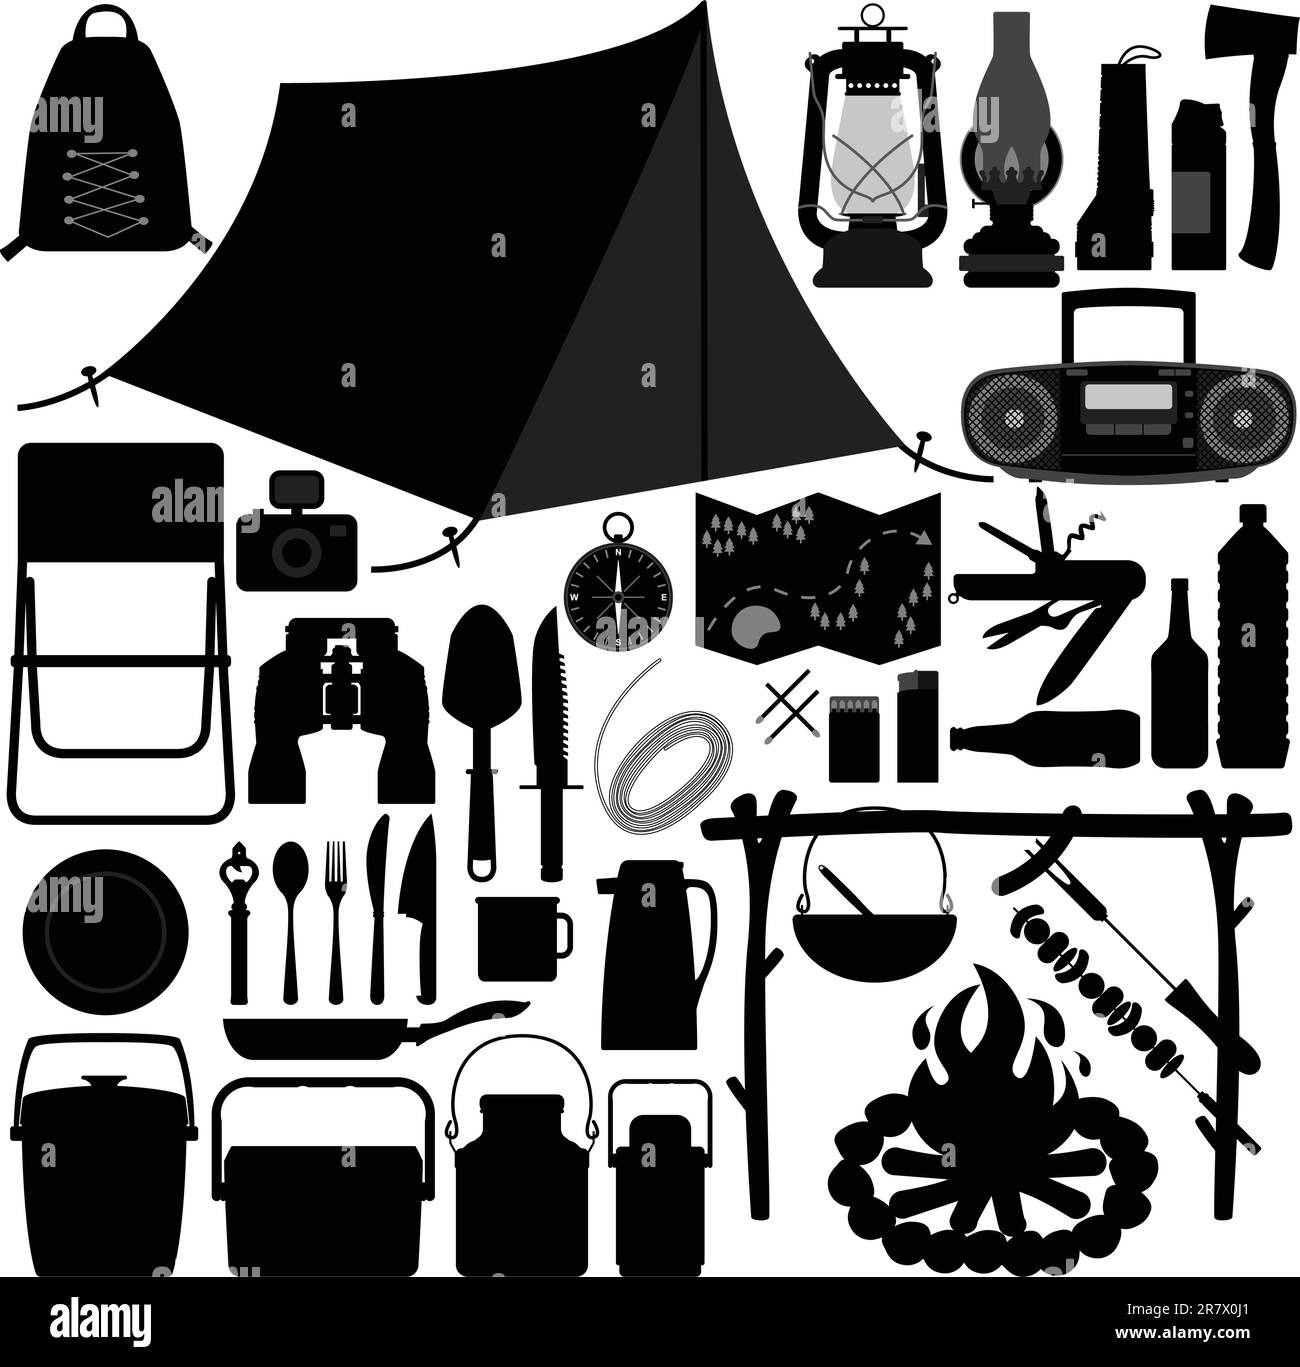 Ein Set aus Camping- und Picknick-Werkzeug und -Ausrüstung. Stock Vektor